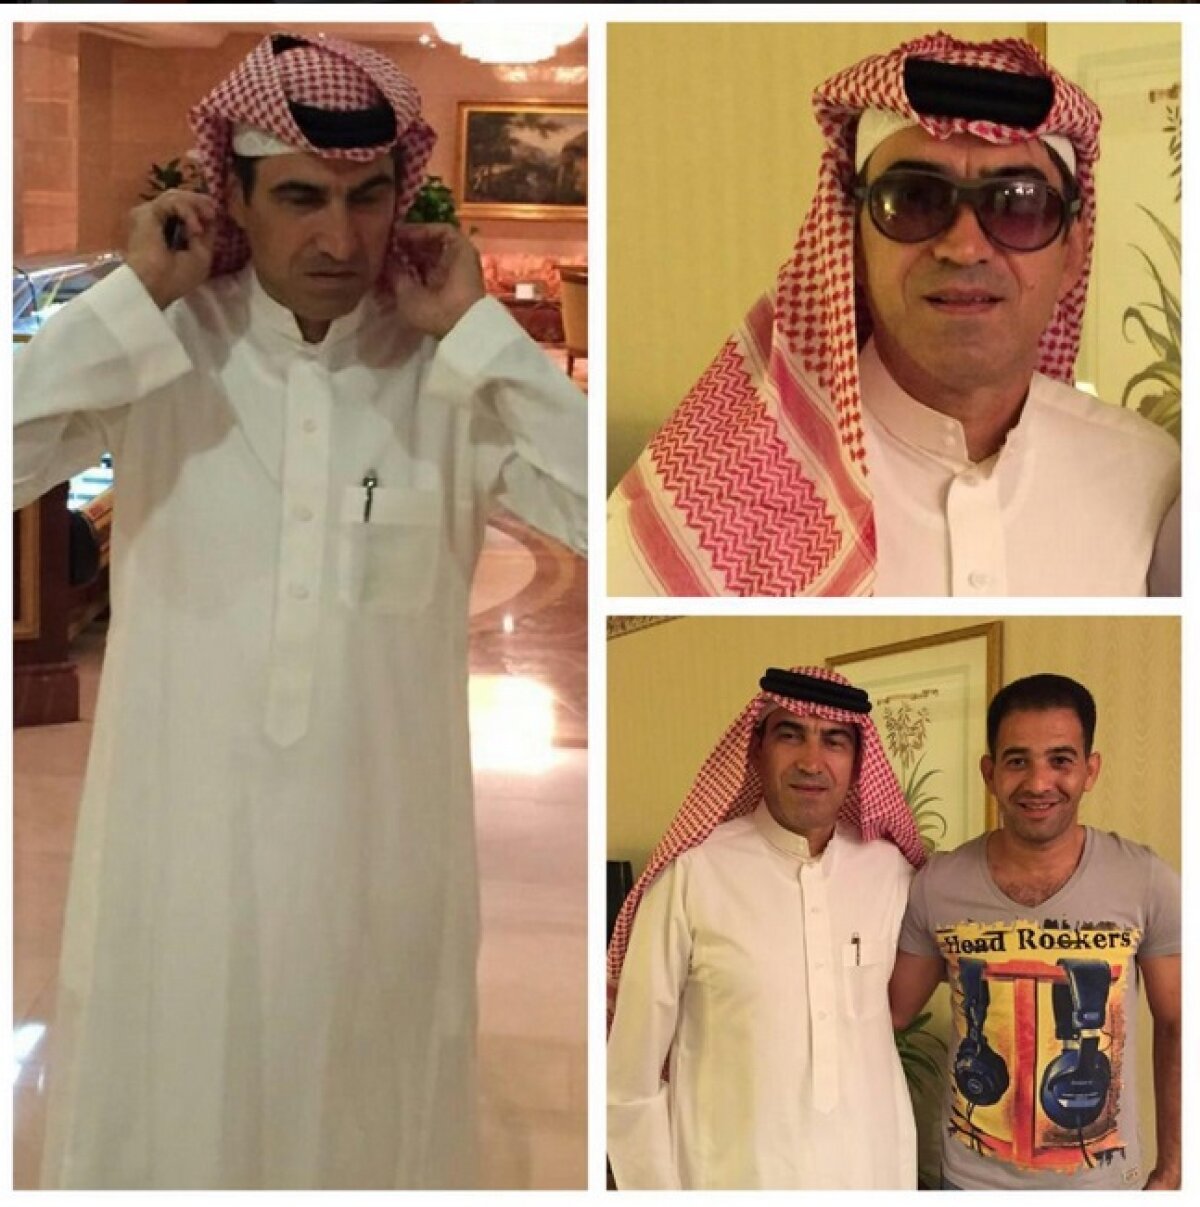 GALERIE FOTO L-au dat pe brazdă! Imagini tari din Arabia Saudită cu Victor Piţurcă! :D